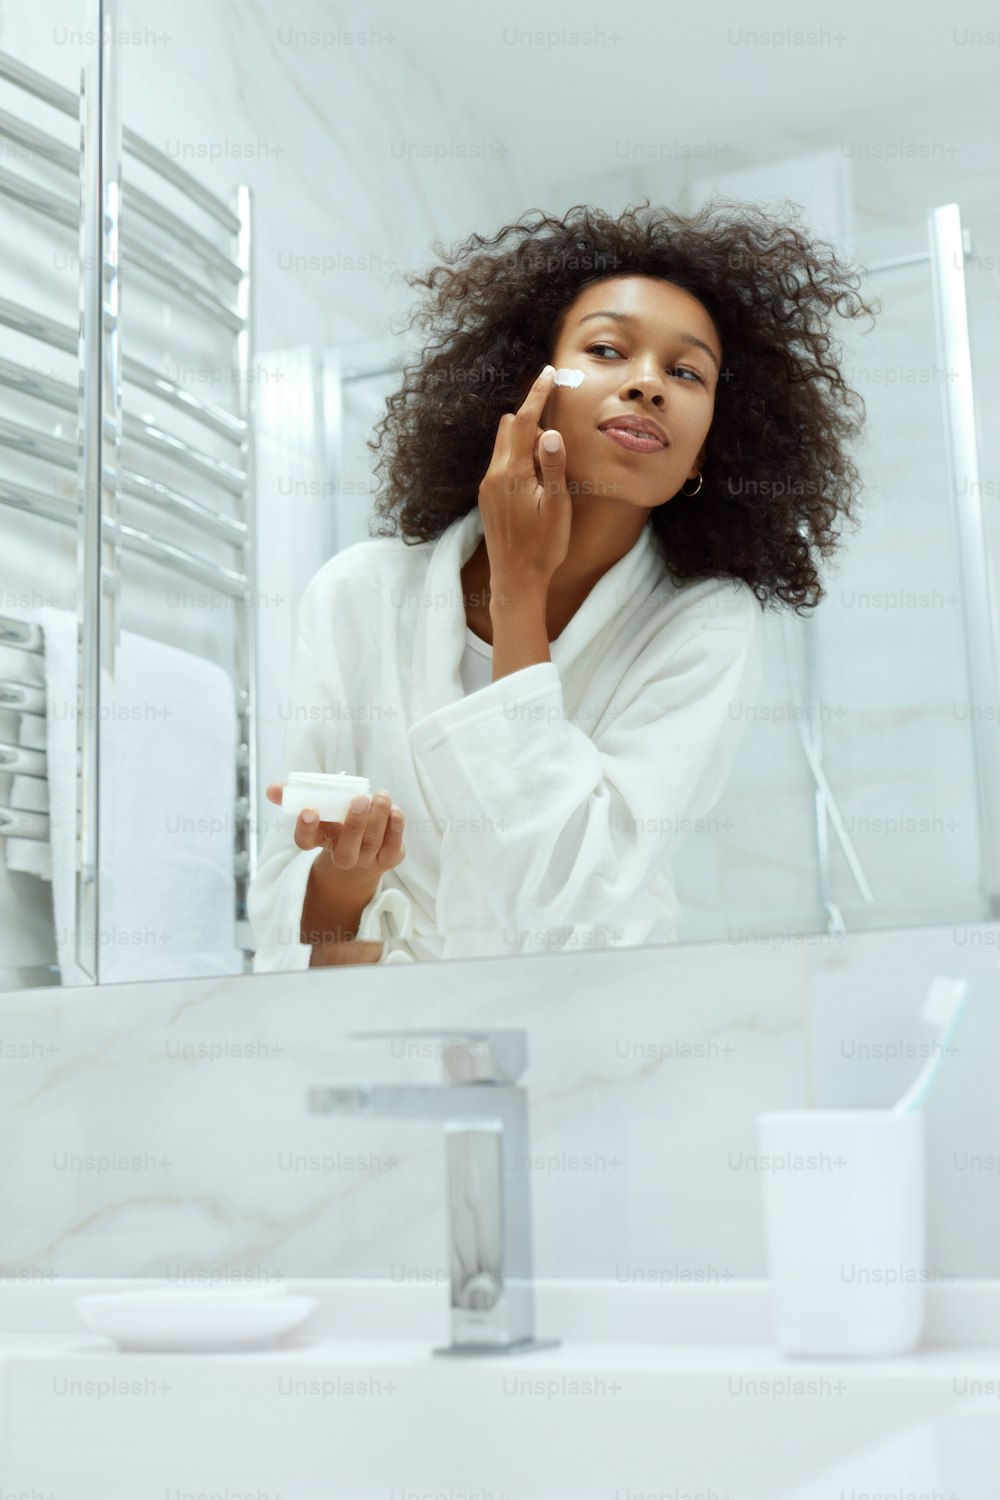 Hautpflege. Frau, die kosmetische Creme auf das Gesicht aufträgt, schaut im Spiegel im Badezimmer. Porträt eines afrikanischen Mädchens mit natürlichem Make-up, sauberer Gesichtshaut, die Feuchtigkeitslotion aufträgt